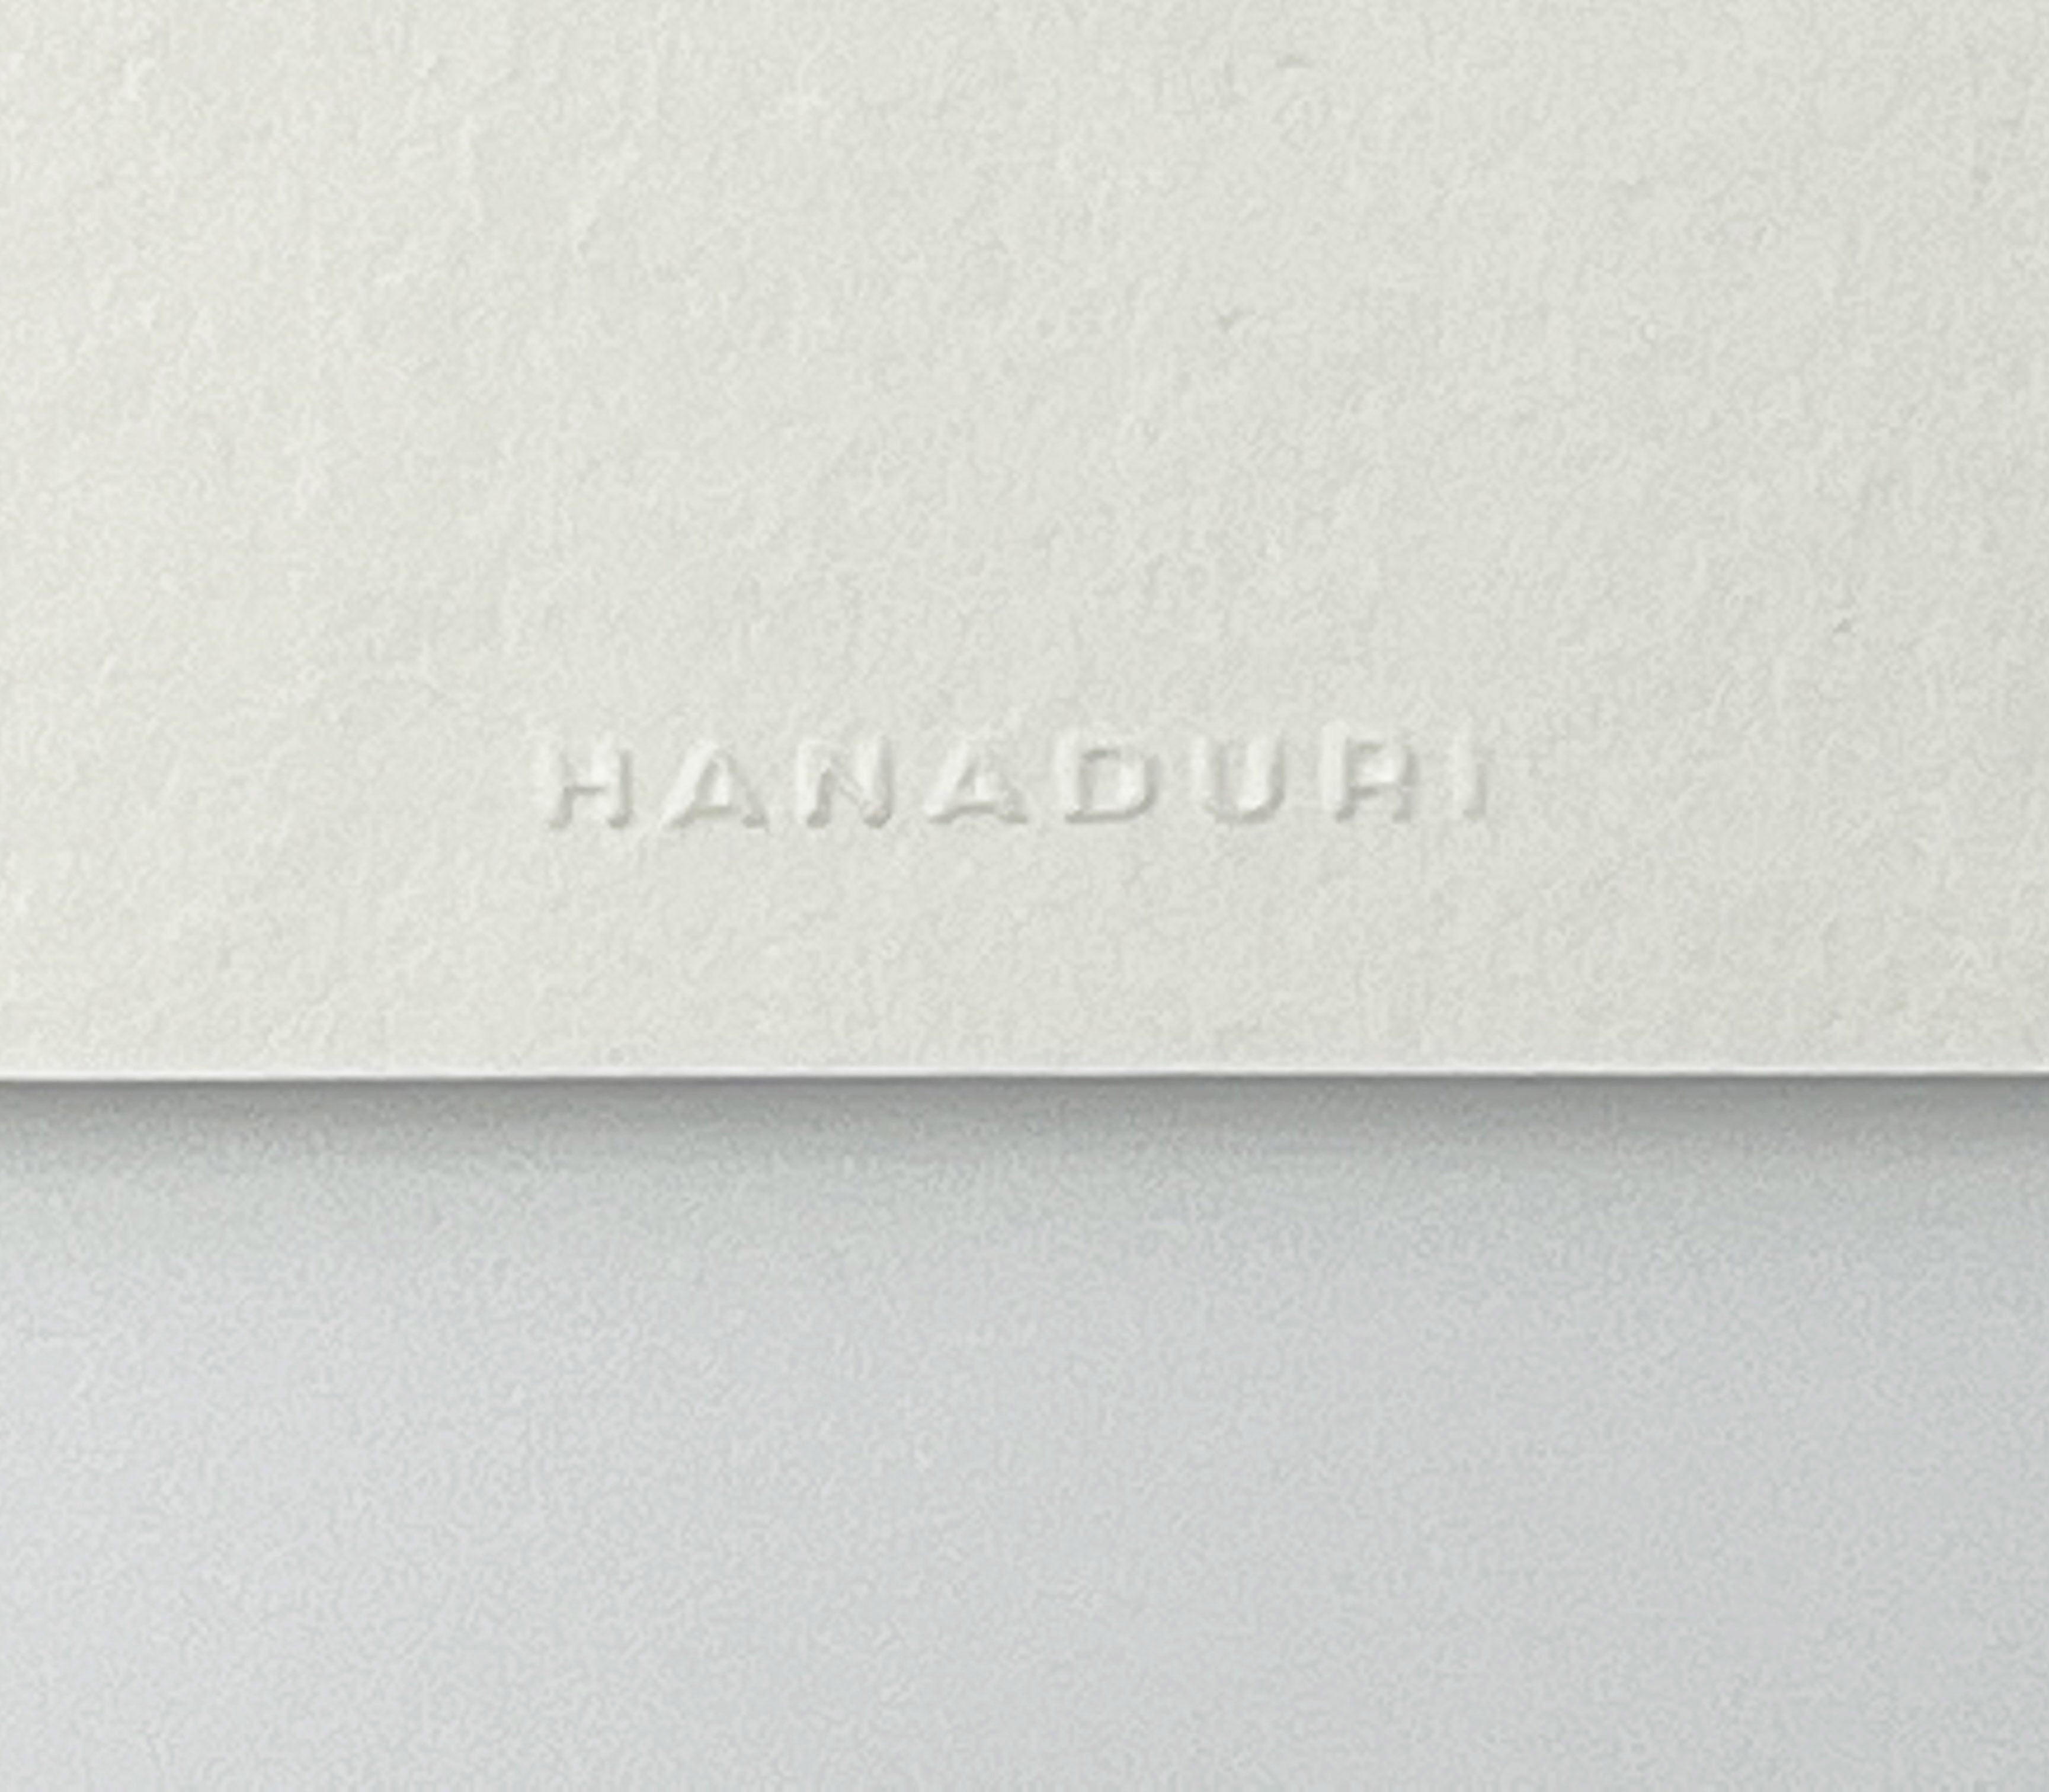 Hanji Book Stripe A5 (Hanaduri)